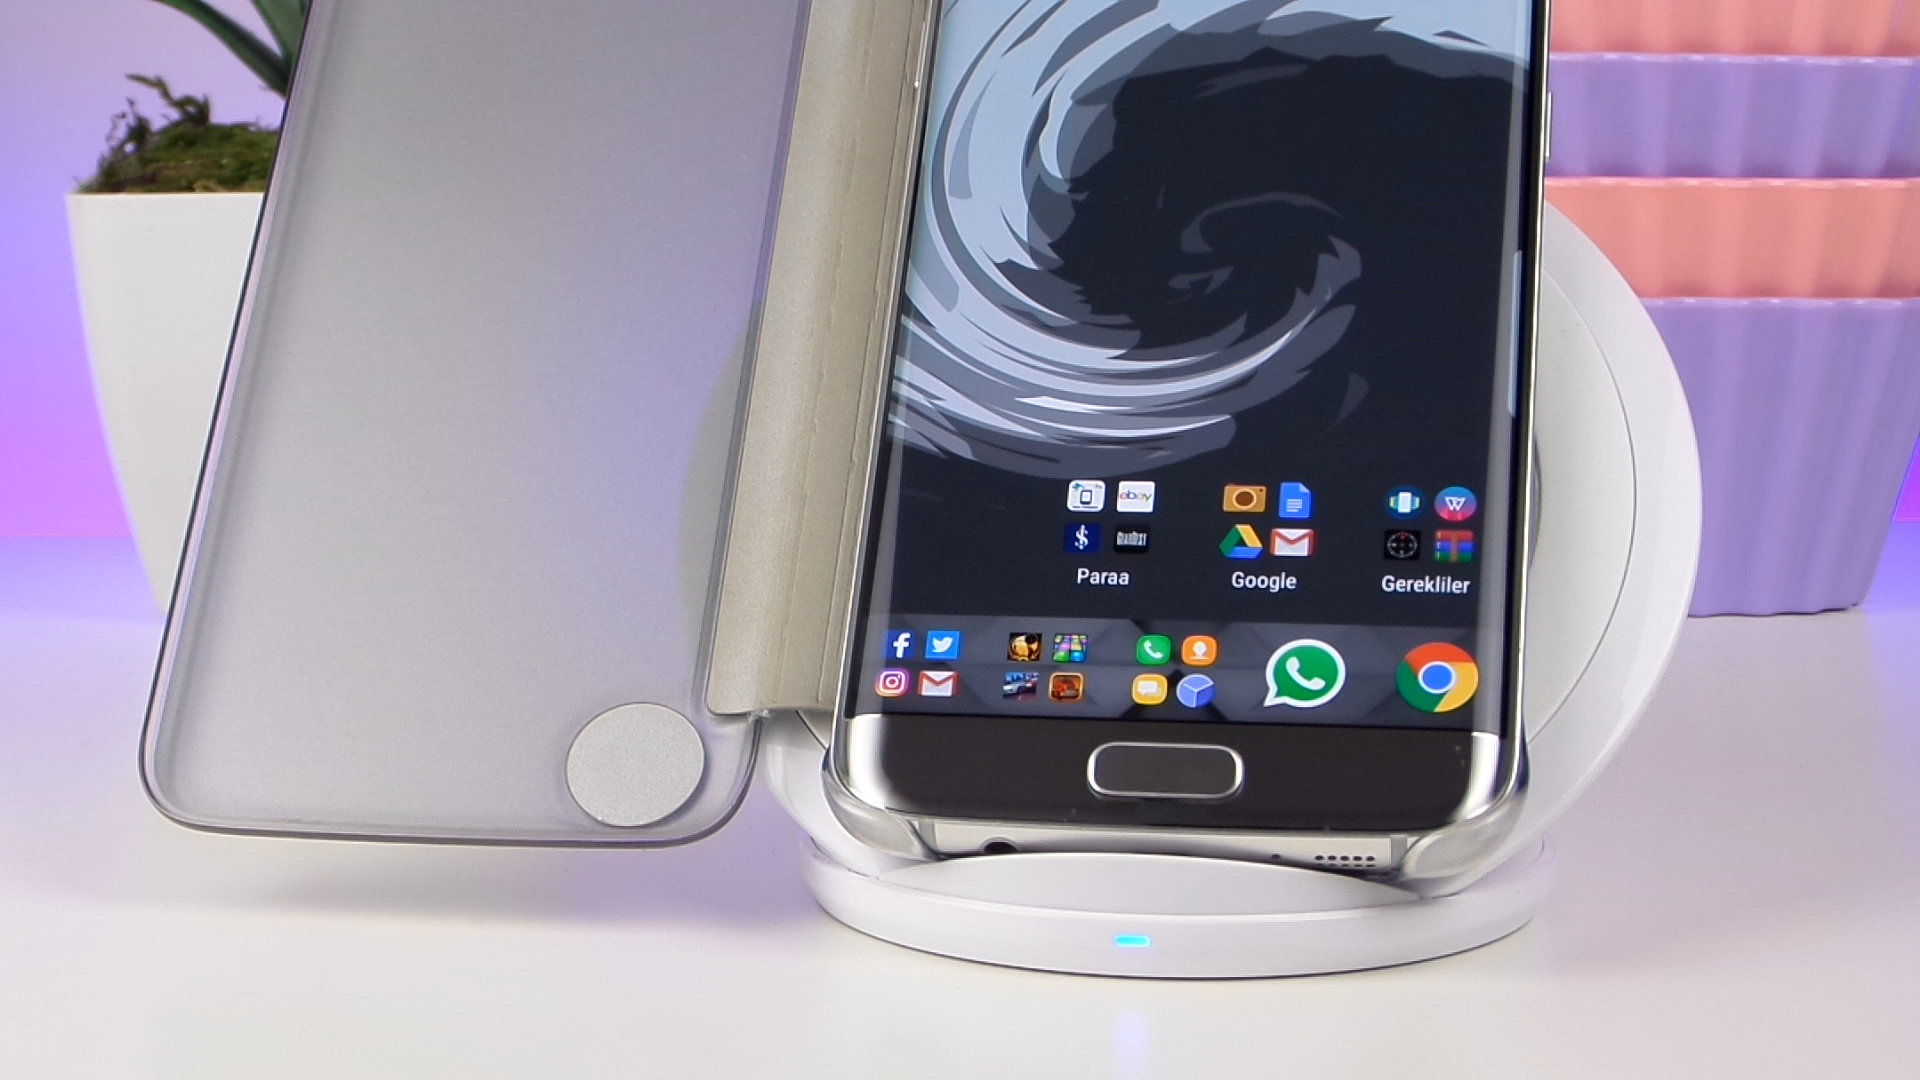 Samsung Kablosuz Hızlı Şarj standı incelemesi 'Hızlı, pratik ve bataryaya zararsız'